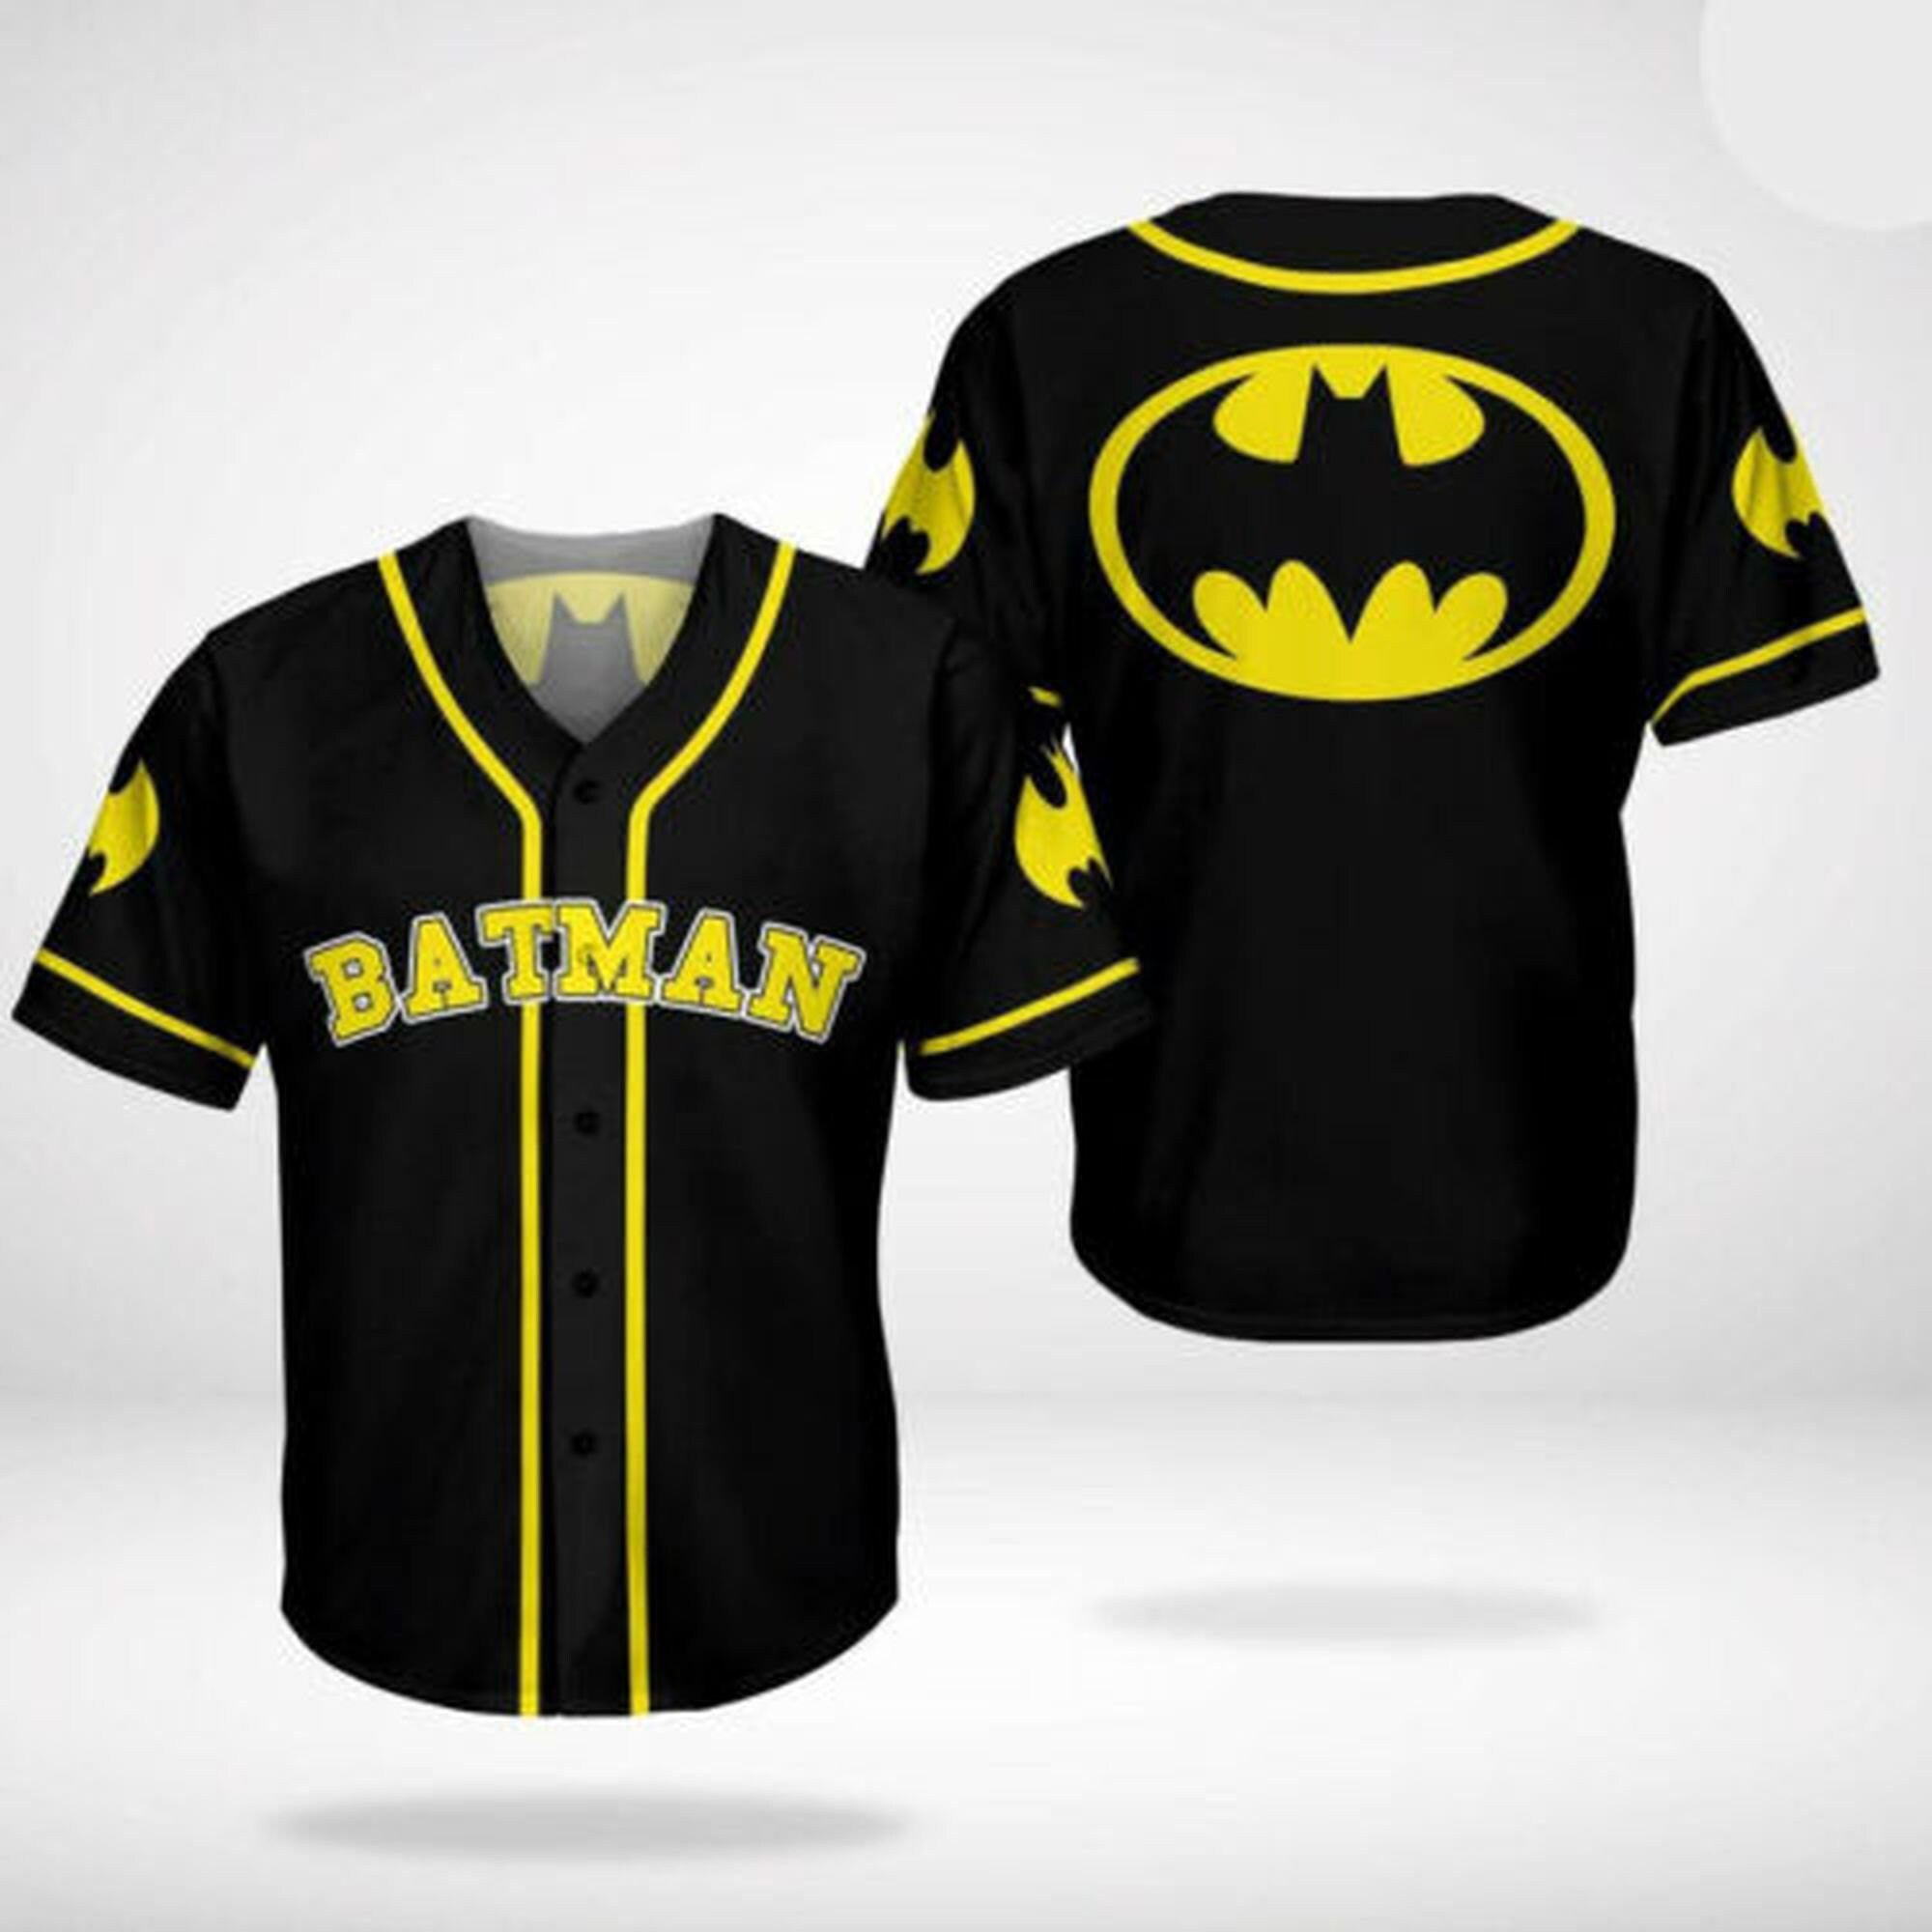 Batman Dark Knight Baseball Jersey, Unisex Jersey Shirt for Men Women